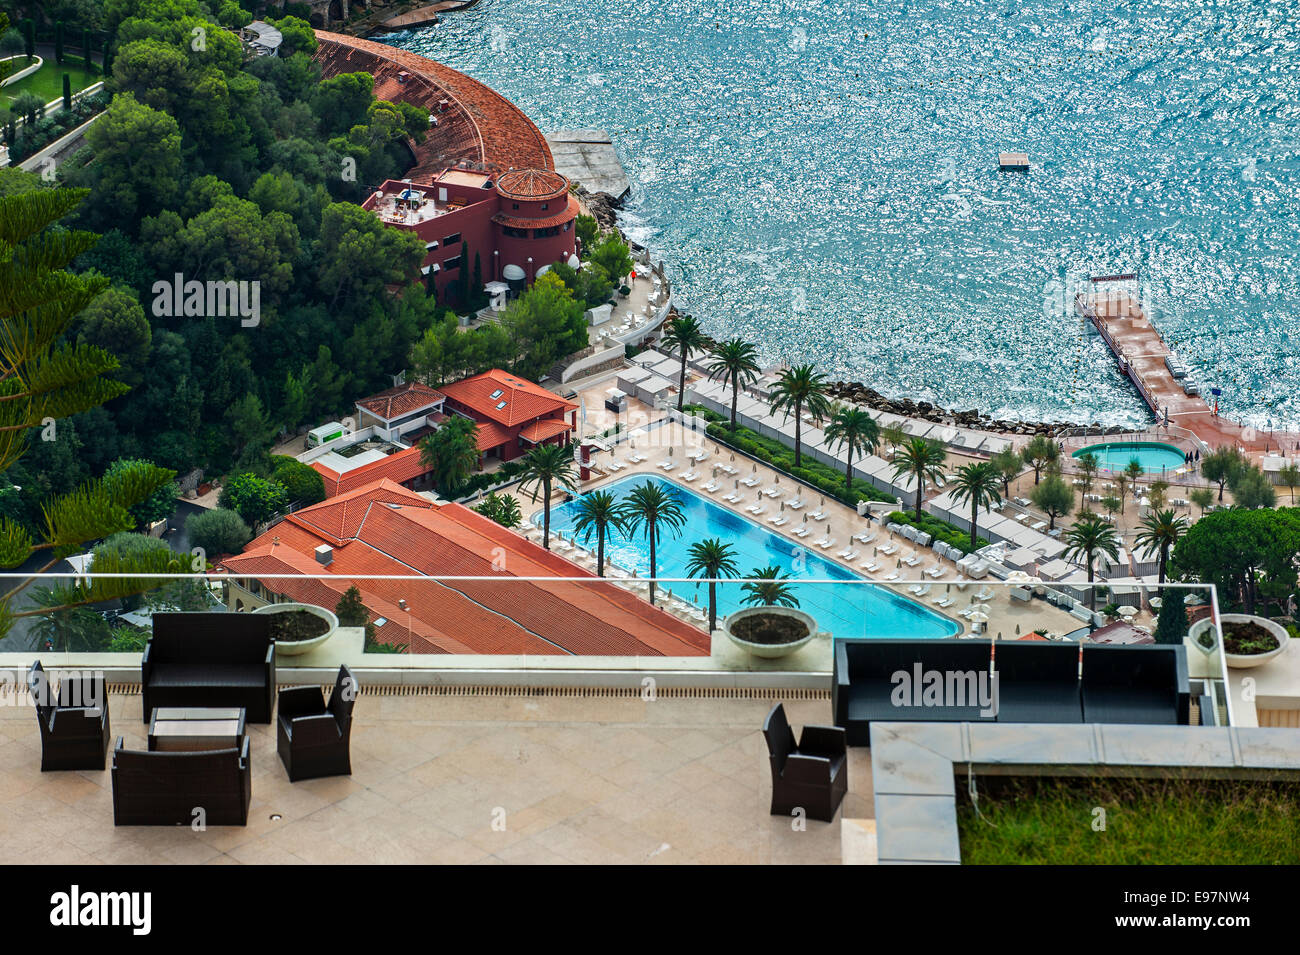 Ver más lujosa terraza y piscina abierta del hotel junto a la playa de Montecarlo, Mónaco a lo largo de la Riviera Francesa Foto de stock